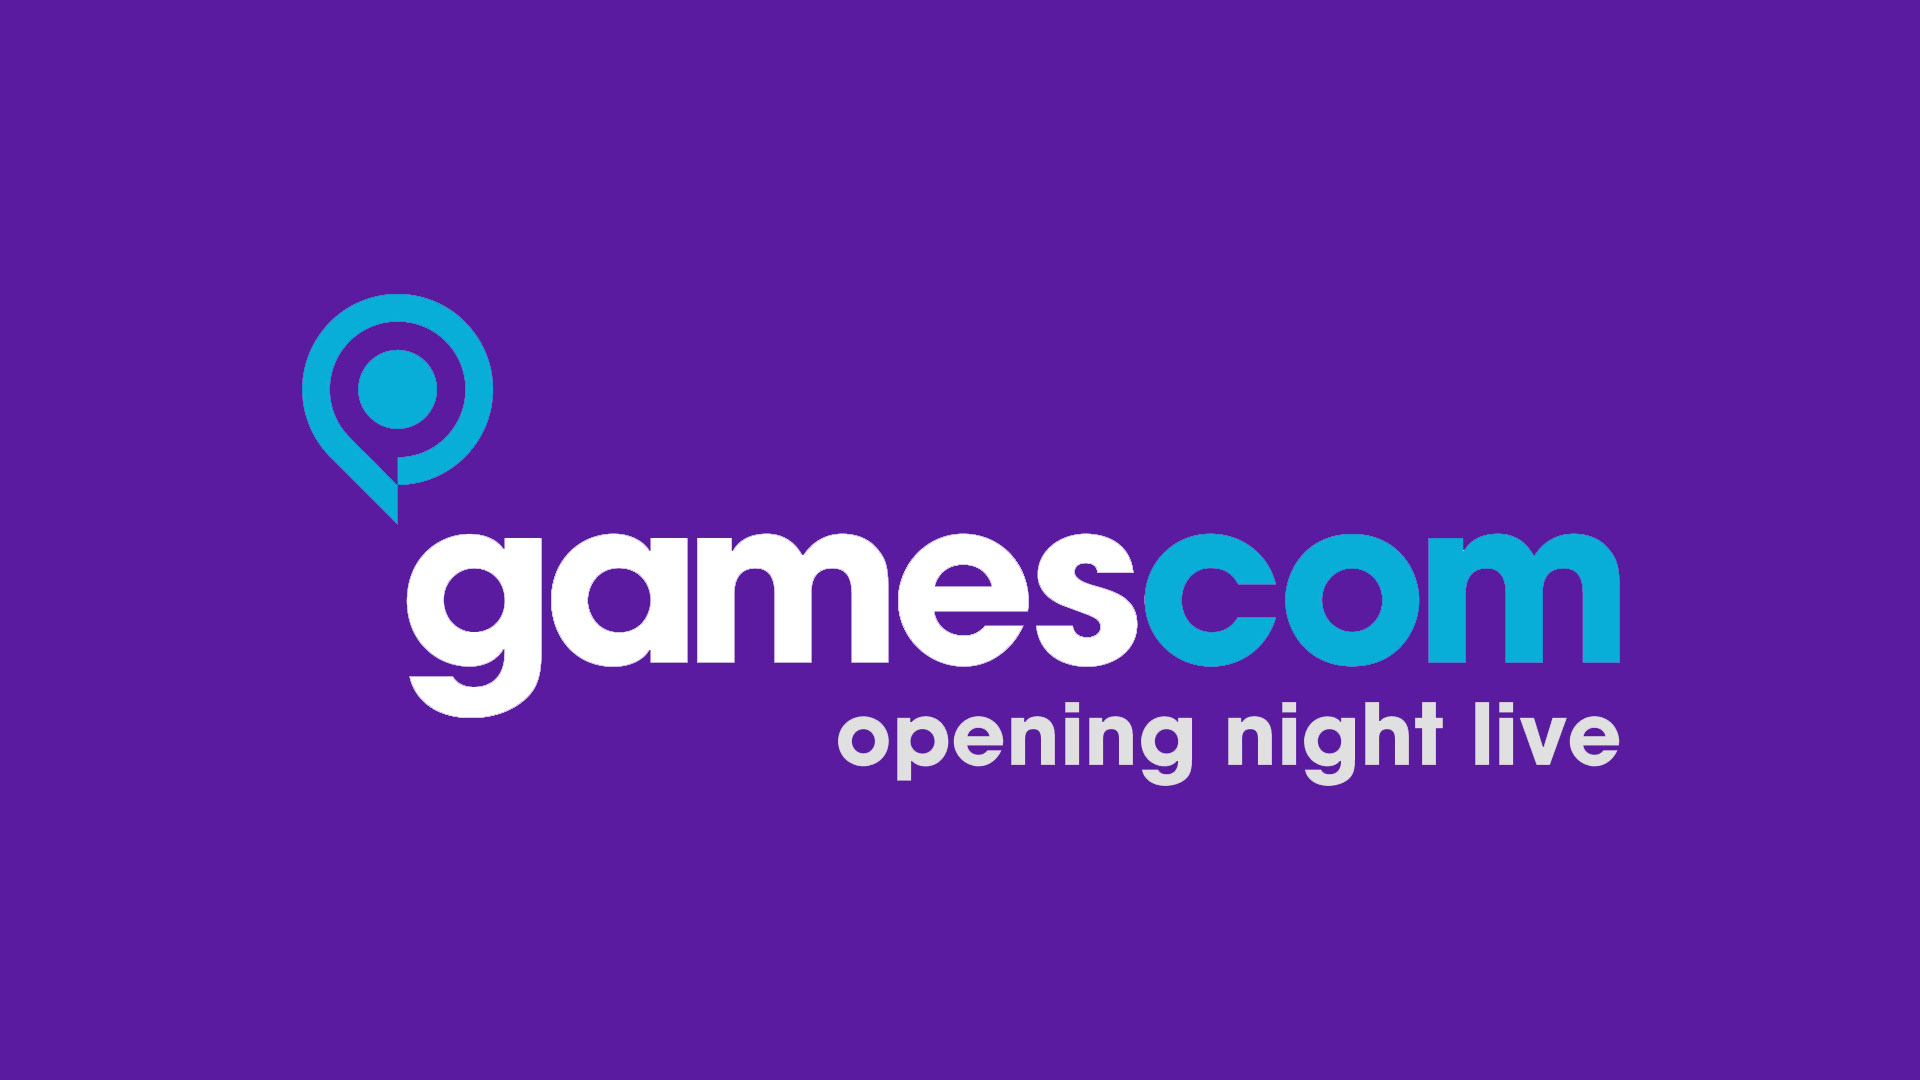 Gamescom Openig रात लाइभ